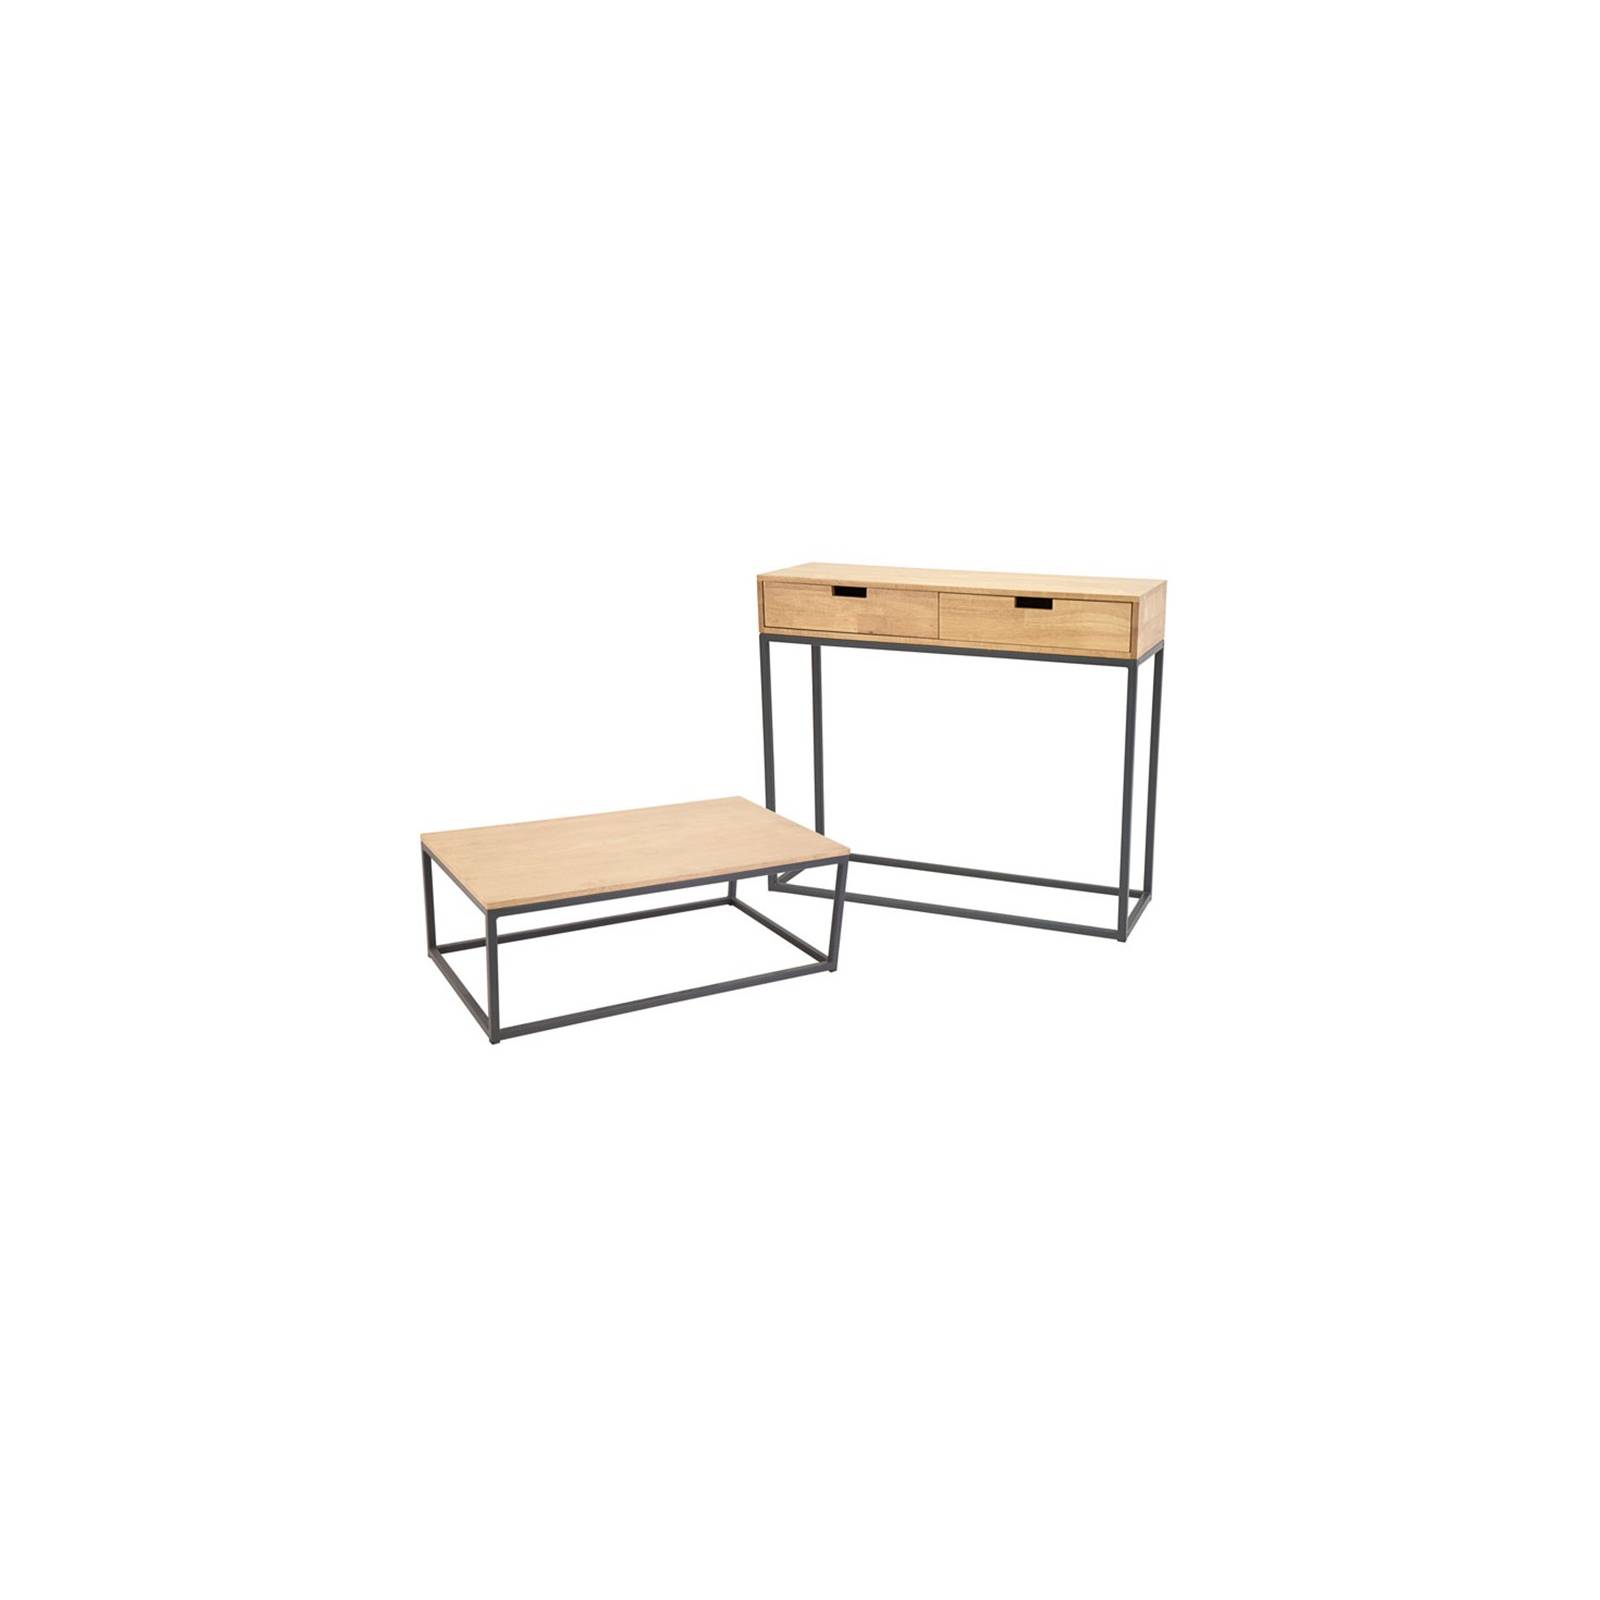 Console / Table Basse Berlin Hévéa - meuble bois exotique